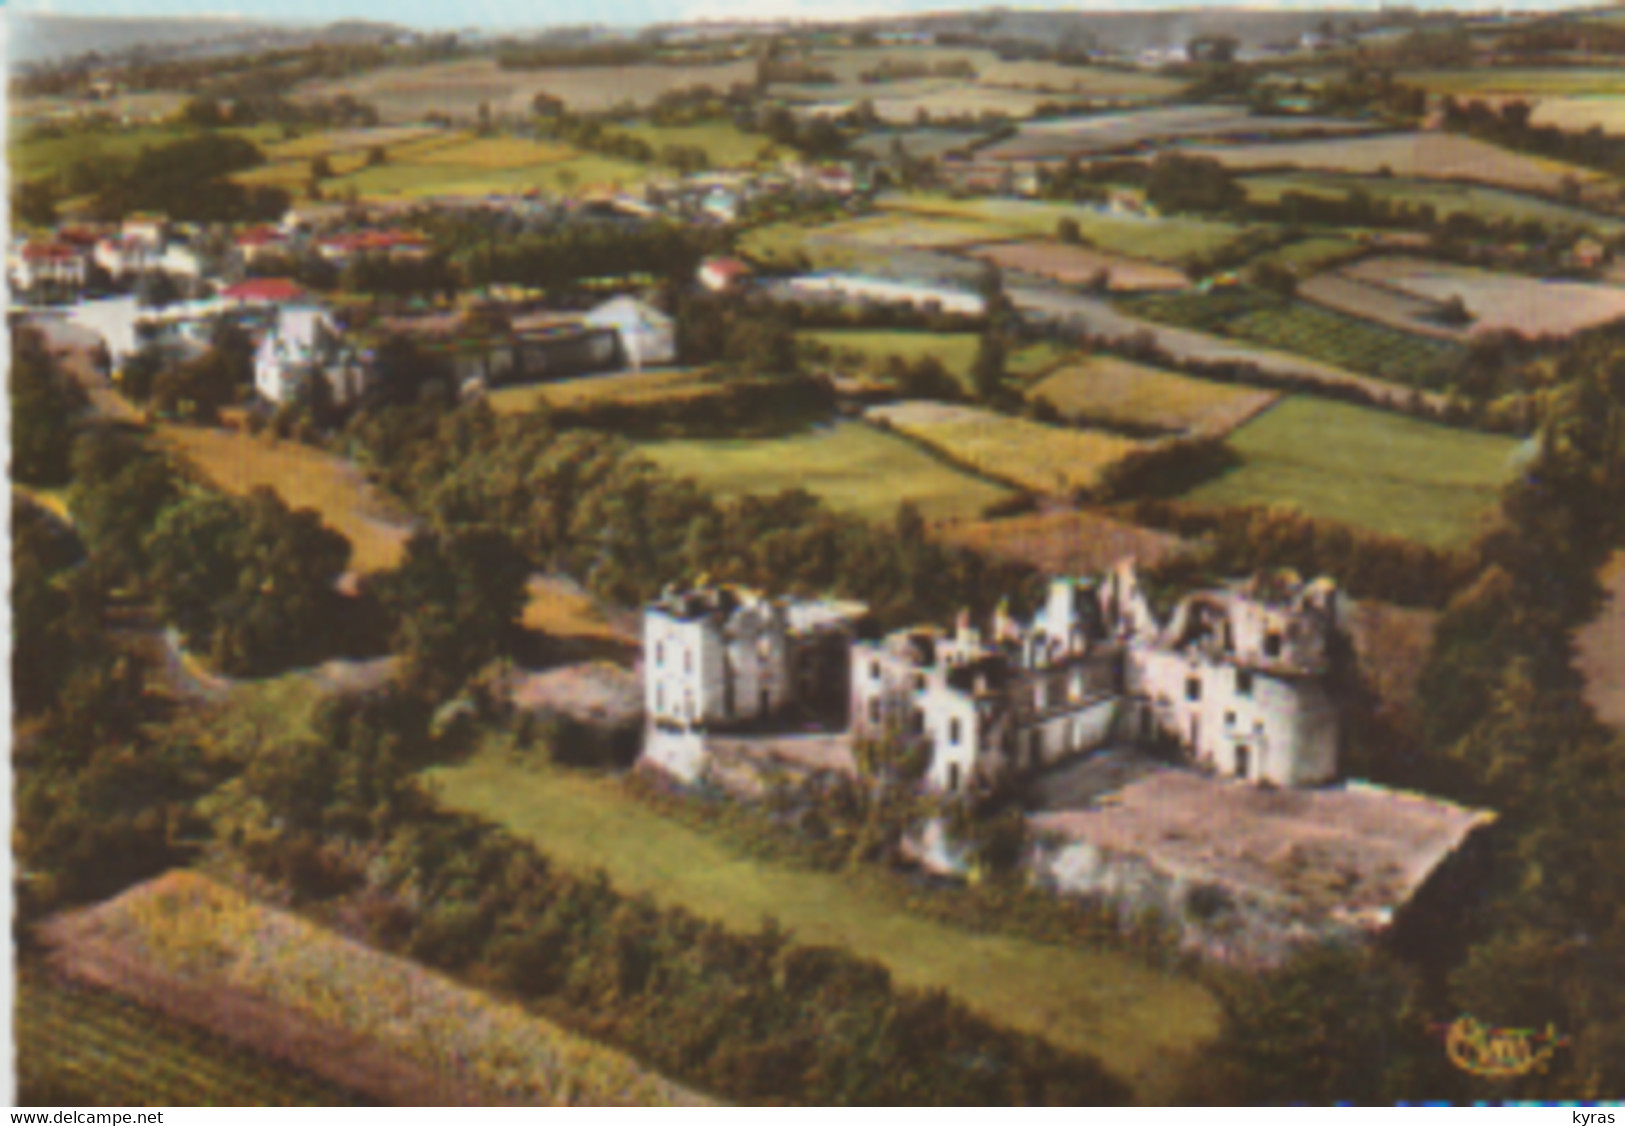 Cpsm 10x15. Vue Aérienne (64) BIDACHE. Les Ruines Du Château Des Ducs De Gramont - Bidache